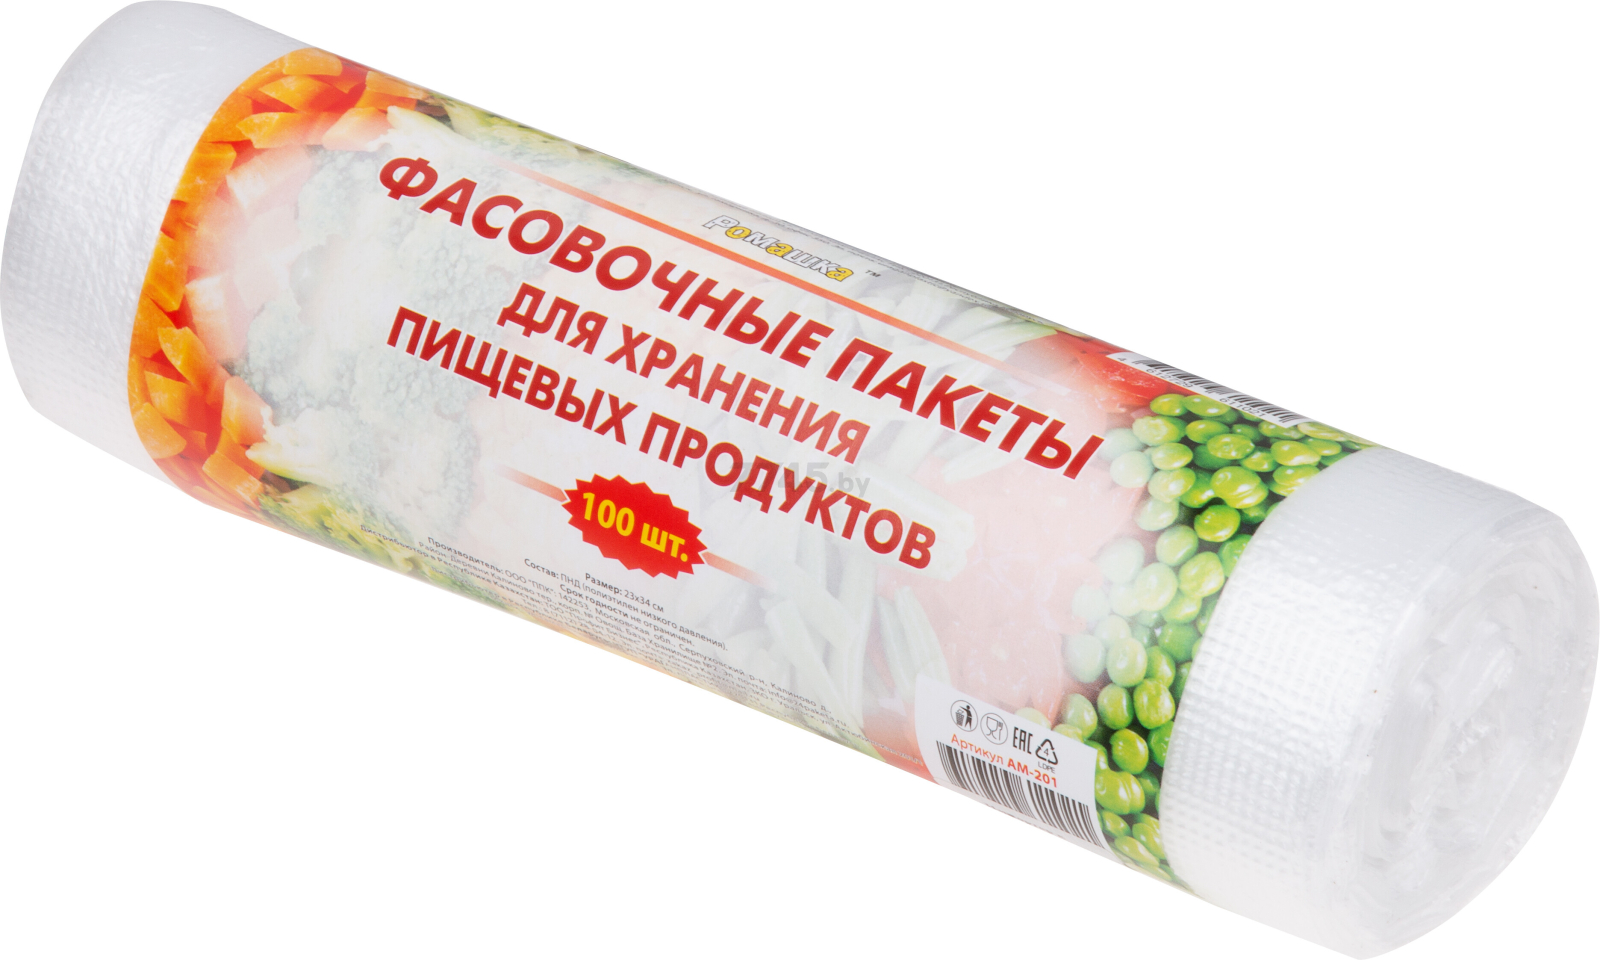 Пакеты для пищевых продуктов РОМАШКА 100 штук (АМ-201)